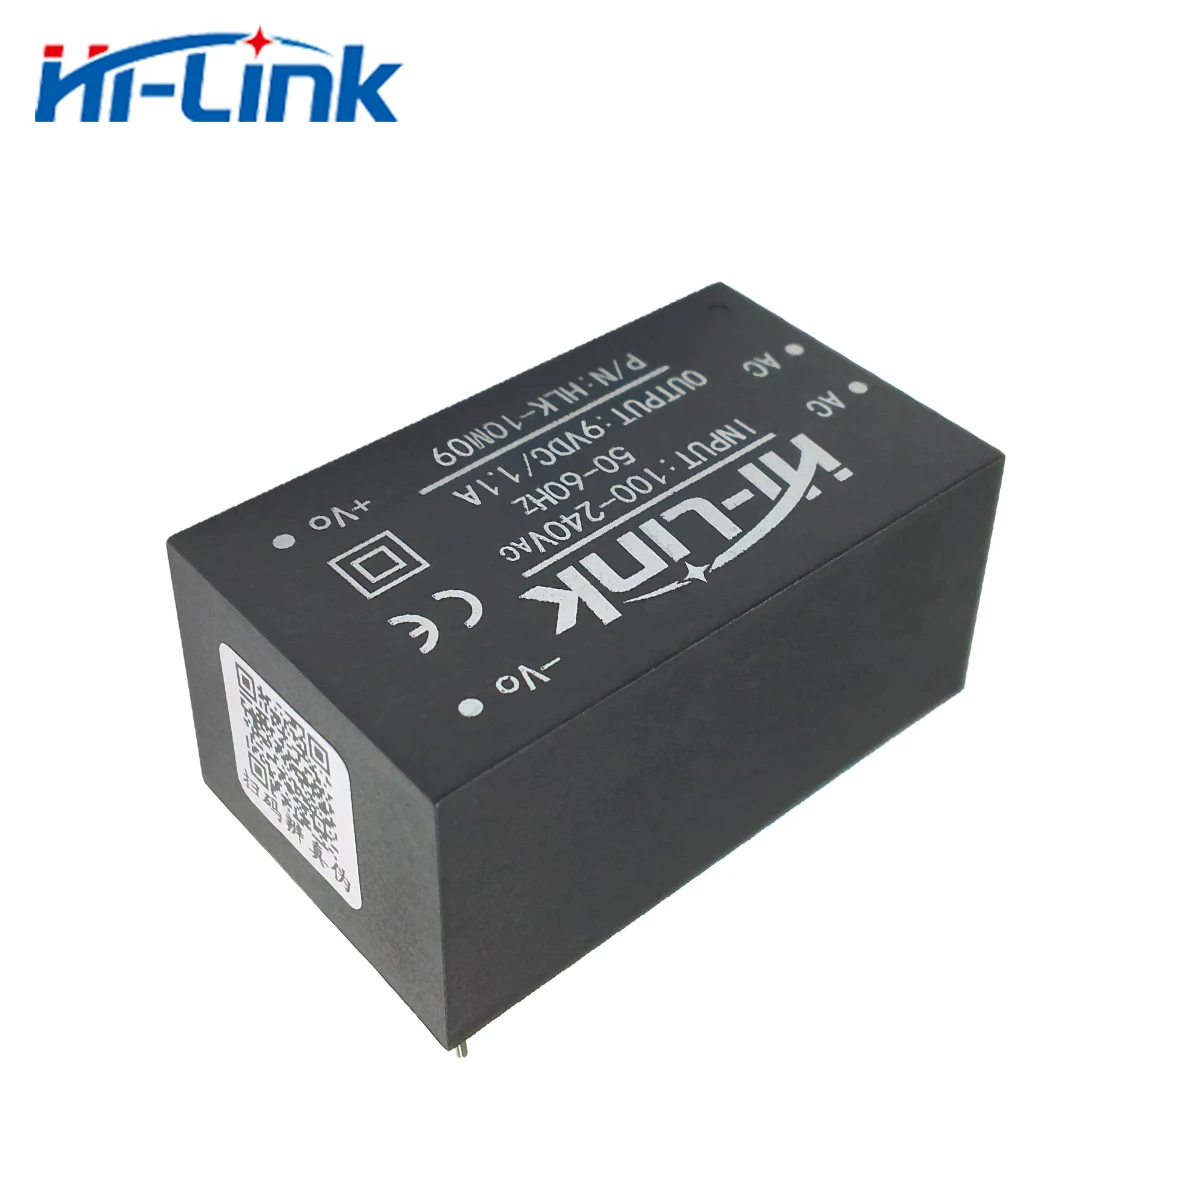 Envío gratis de Hi-Link 2pcs 220v 9V 10W AC DC aislado hogar inteligente compacto de conmutación de potencia mini supplymodule HLK-10M09 Imagen 2